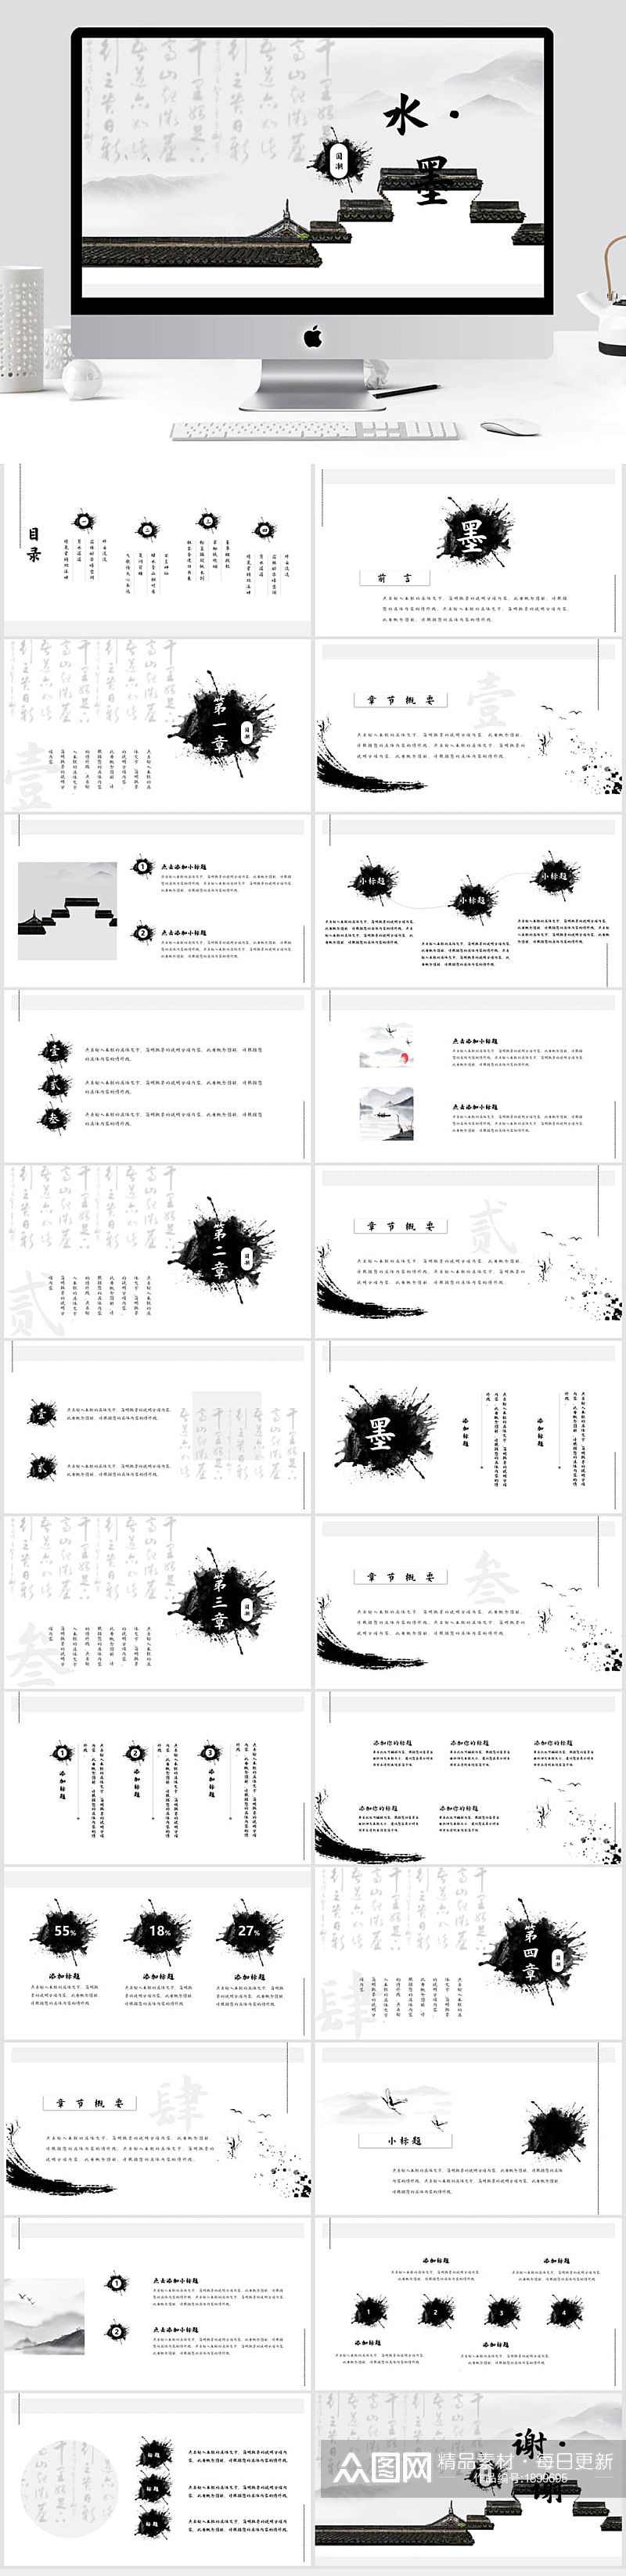 黑白水墨书法中国风工作汇报通用PPT模板素材